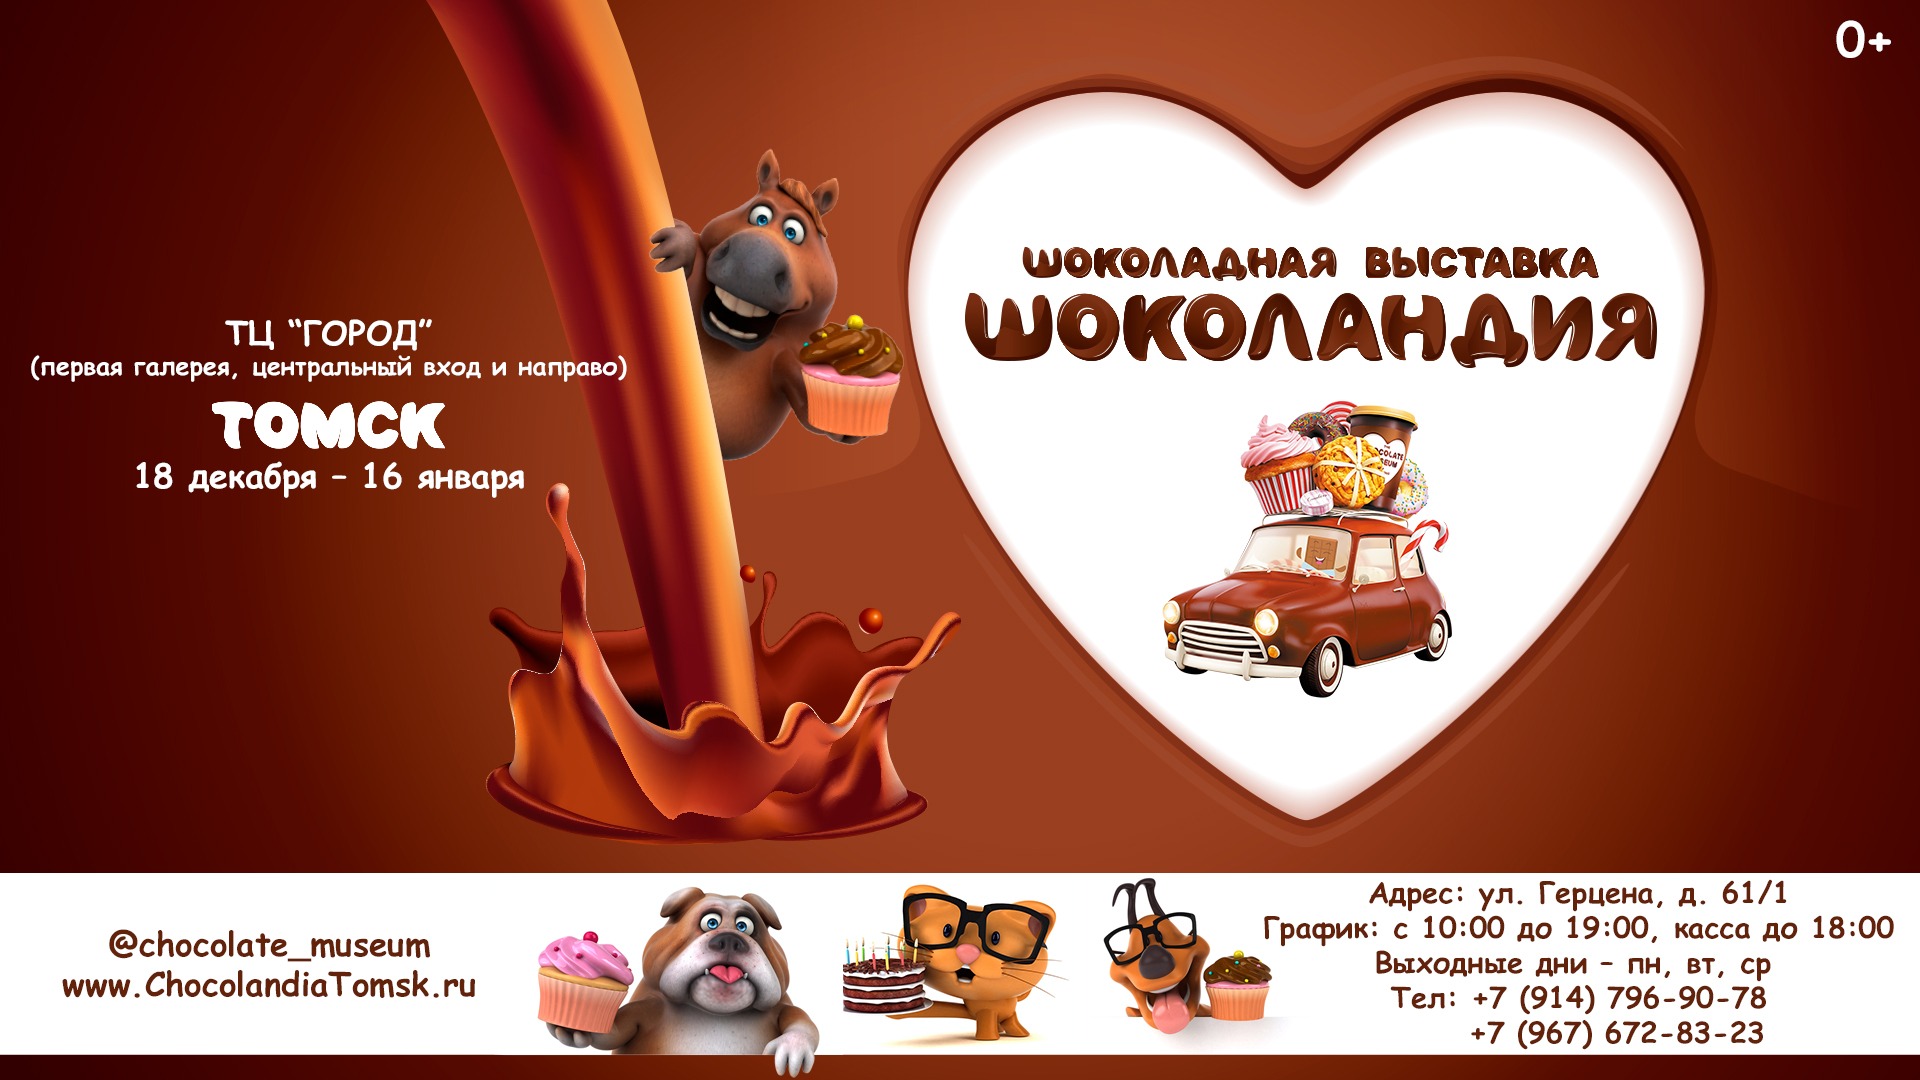 Выставка «Шоколандия» в Томске  дарит мастер-класс*